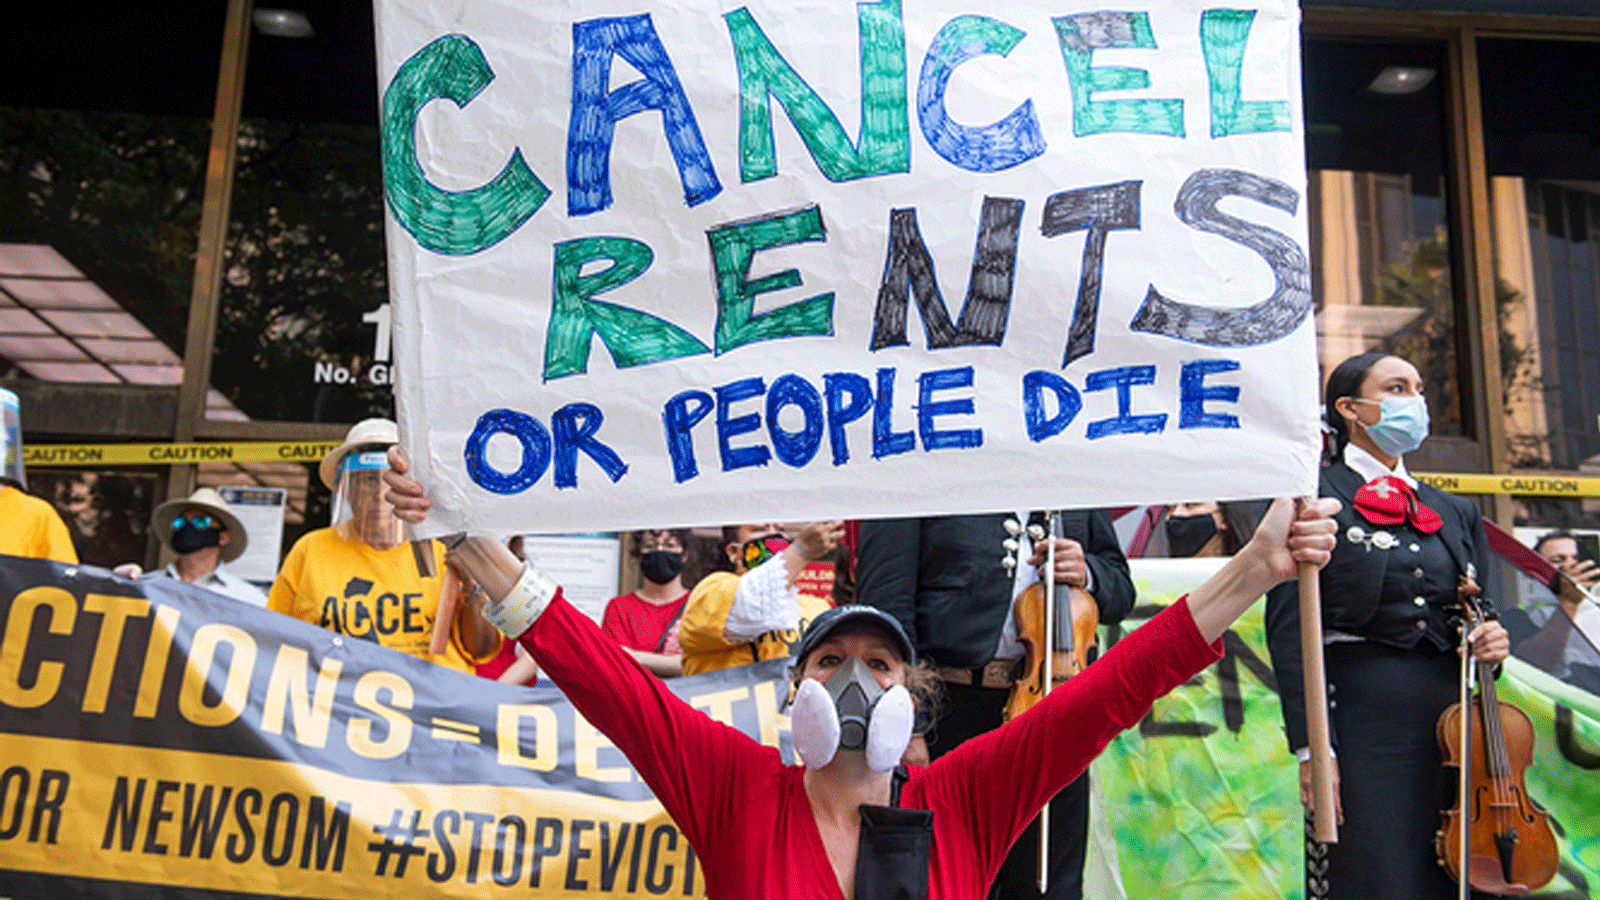 يحضر المستأجرون والمدافعون عن الإسكان احتجاجًا لإلغاء الإيجار وتجنب عمليات الإخلاء أمام مبنى المحكمة وسط جائحة فيروس كورونا في لوس أنجلوس ، كاليفورنيا.